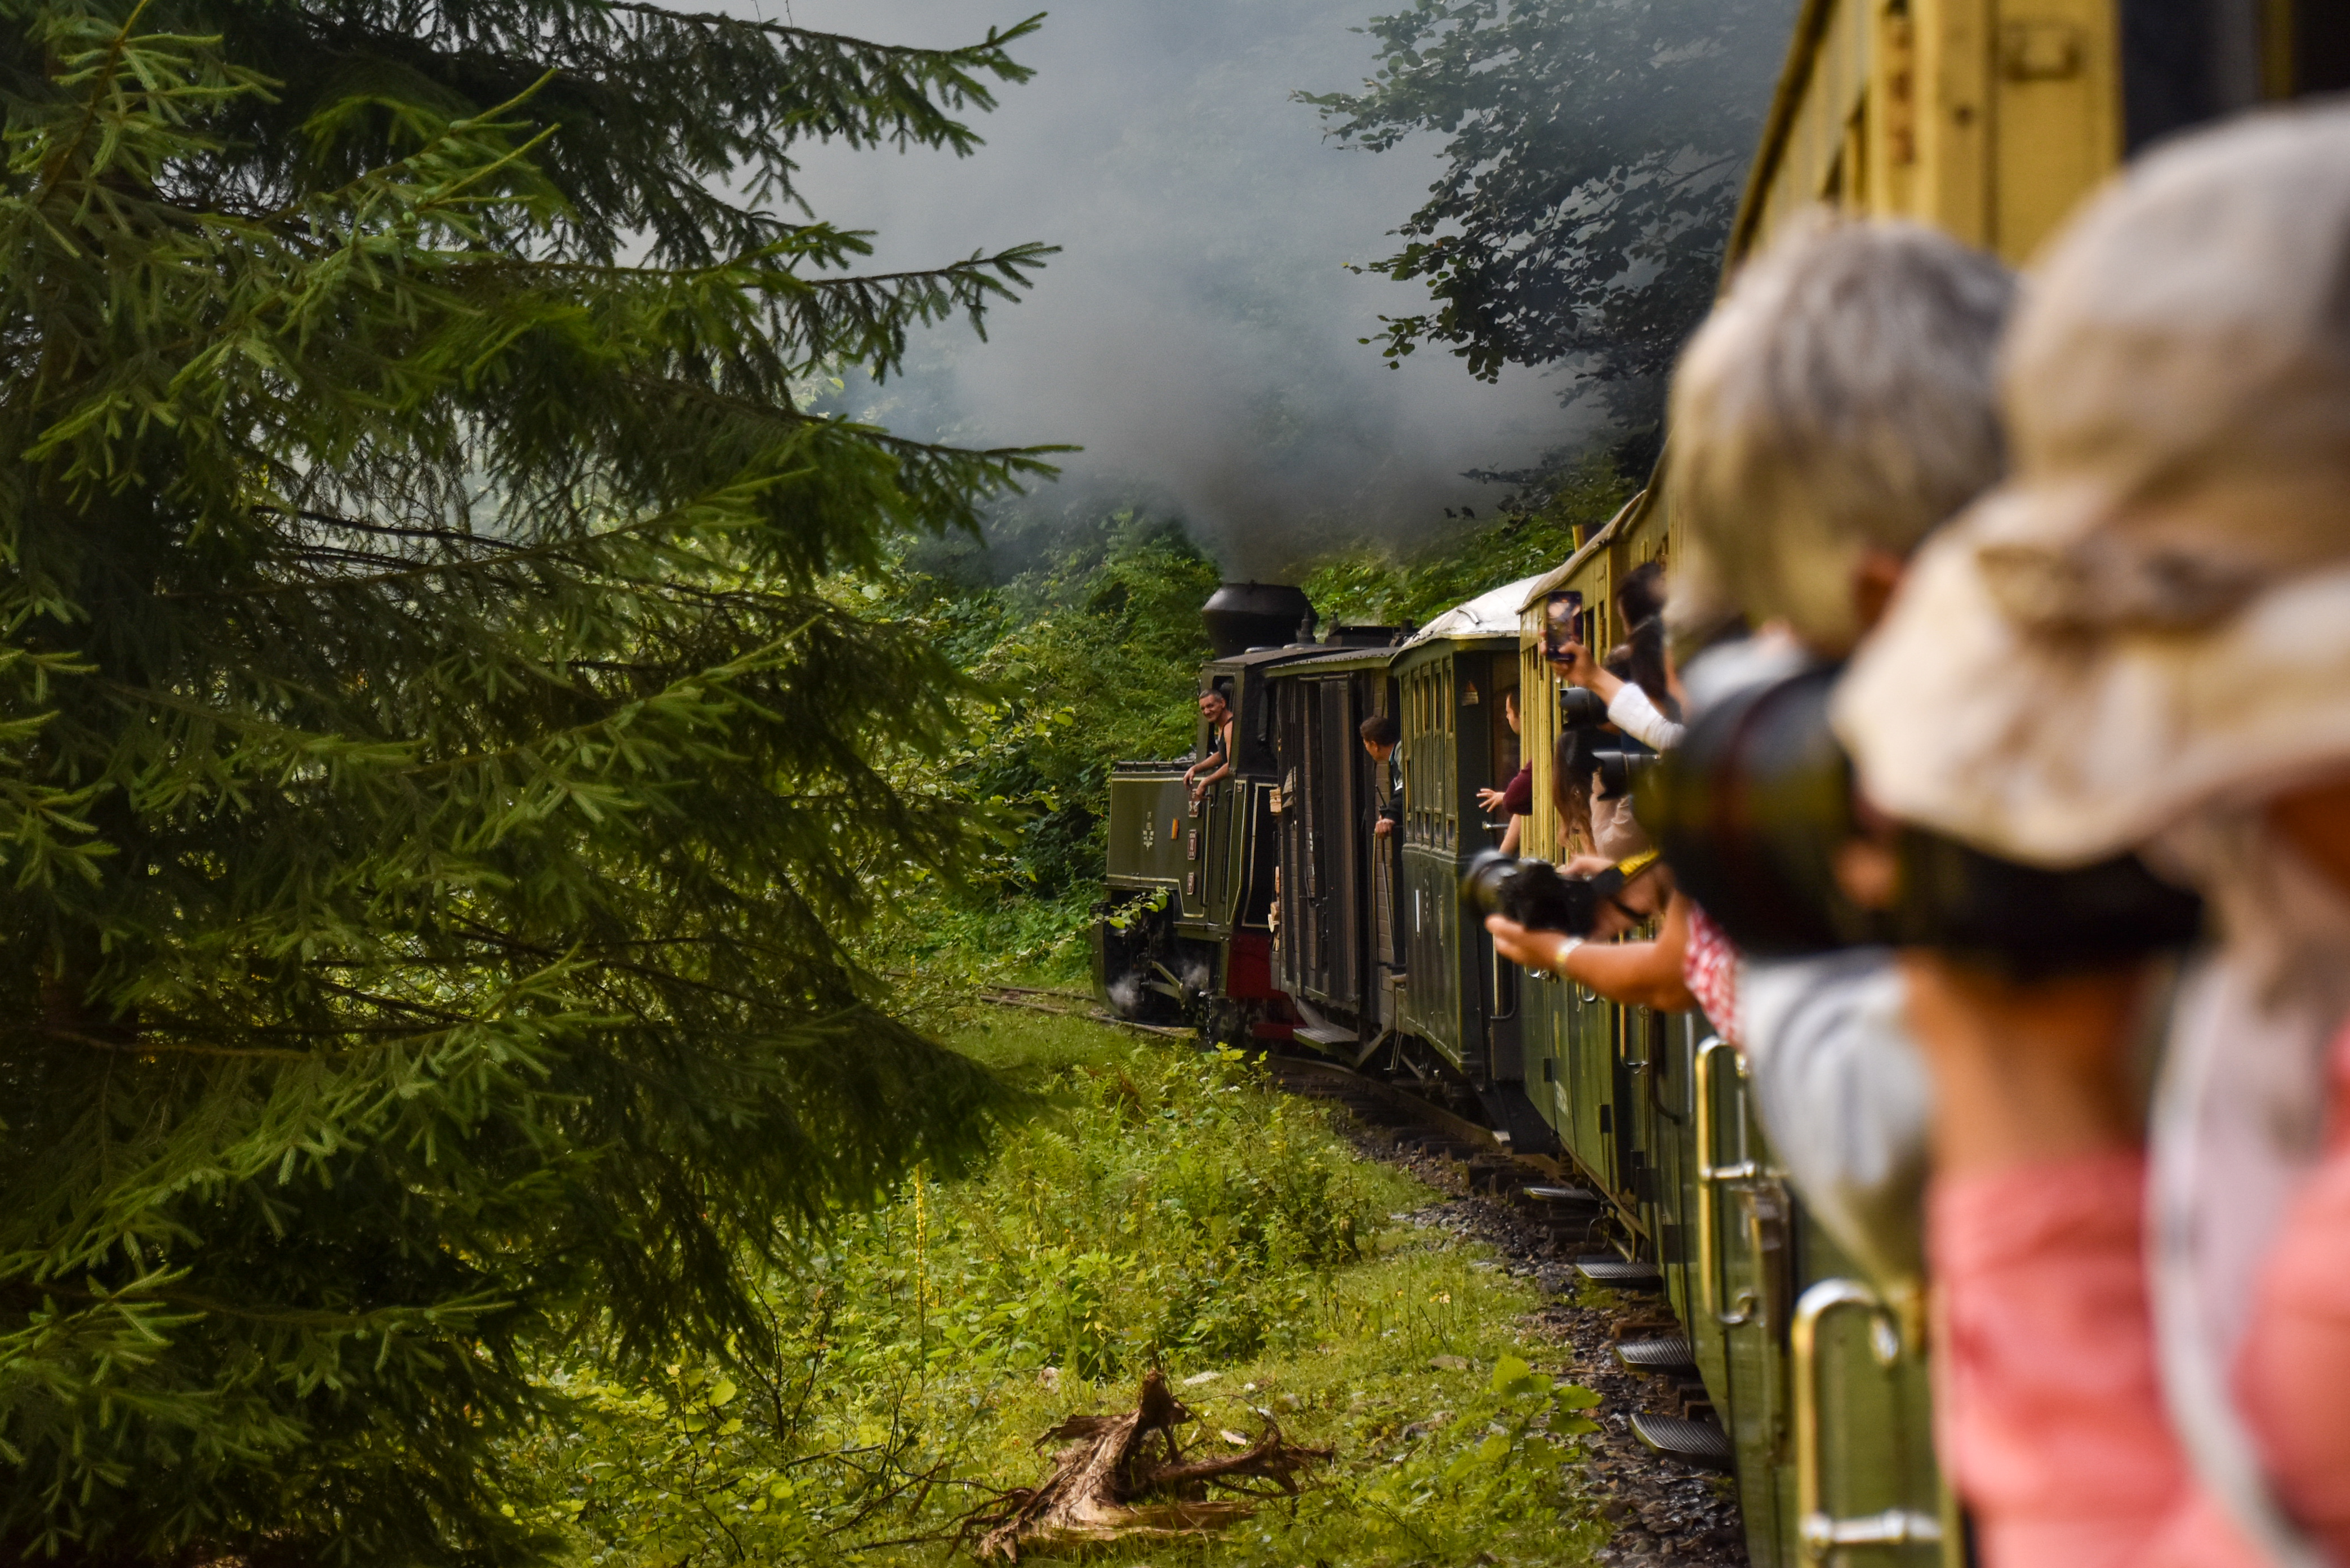 12. The Steam Train on Vaser Valley